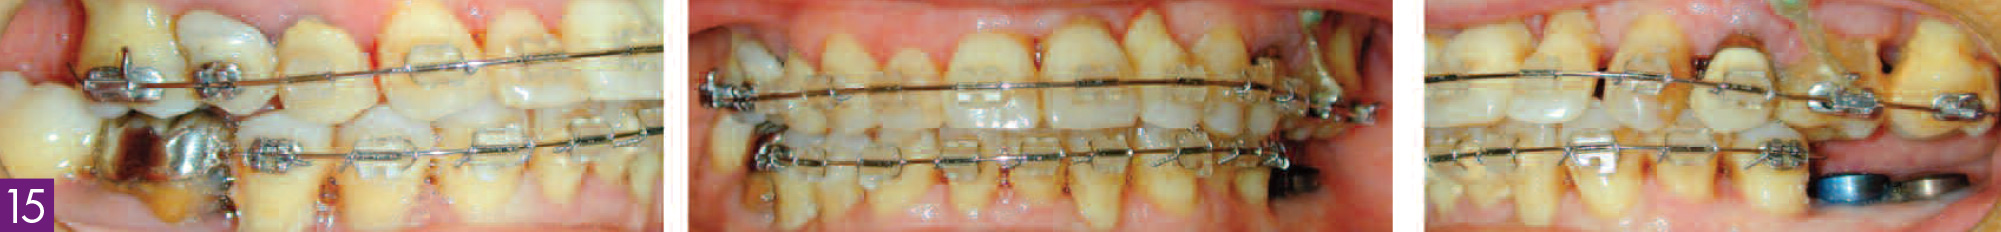 fin-de-traitement-orthodontique